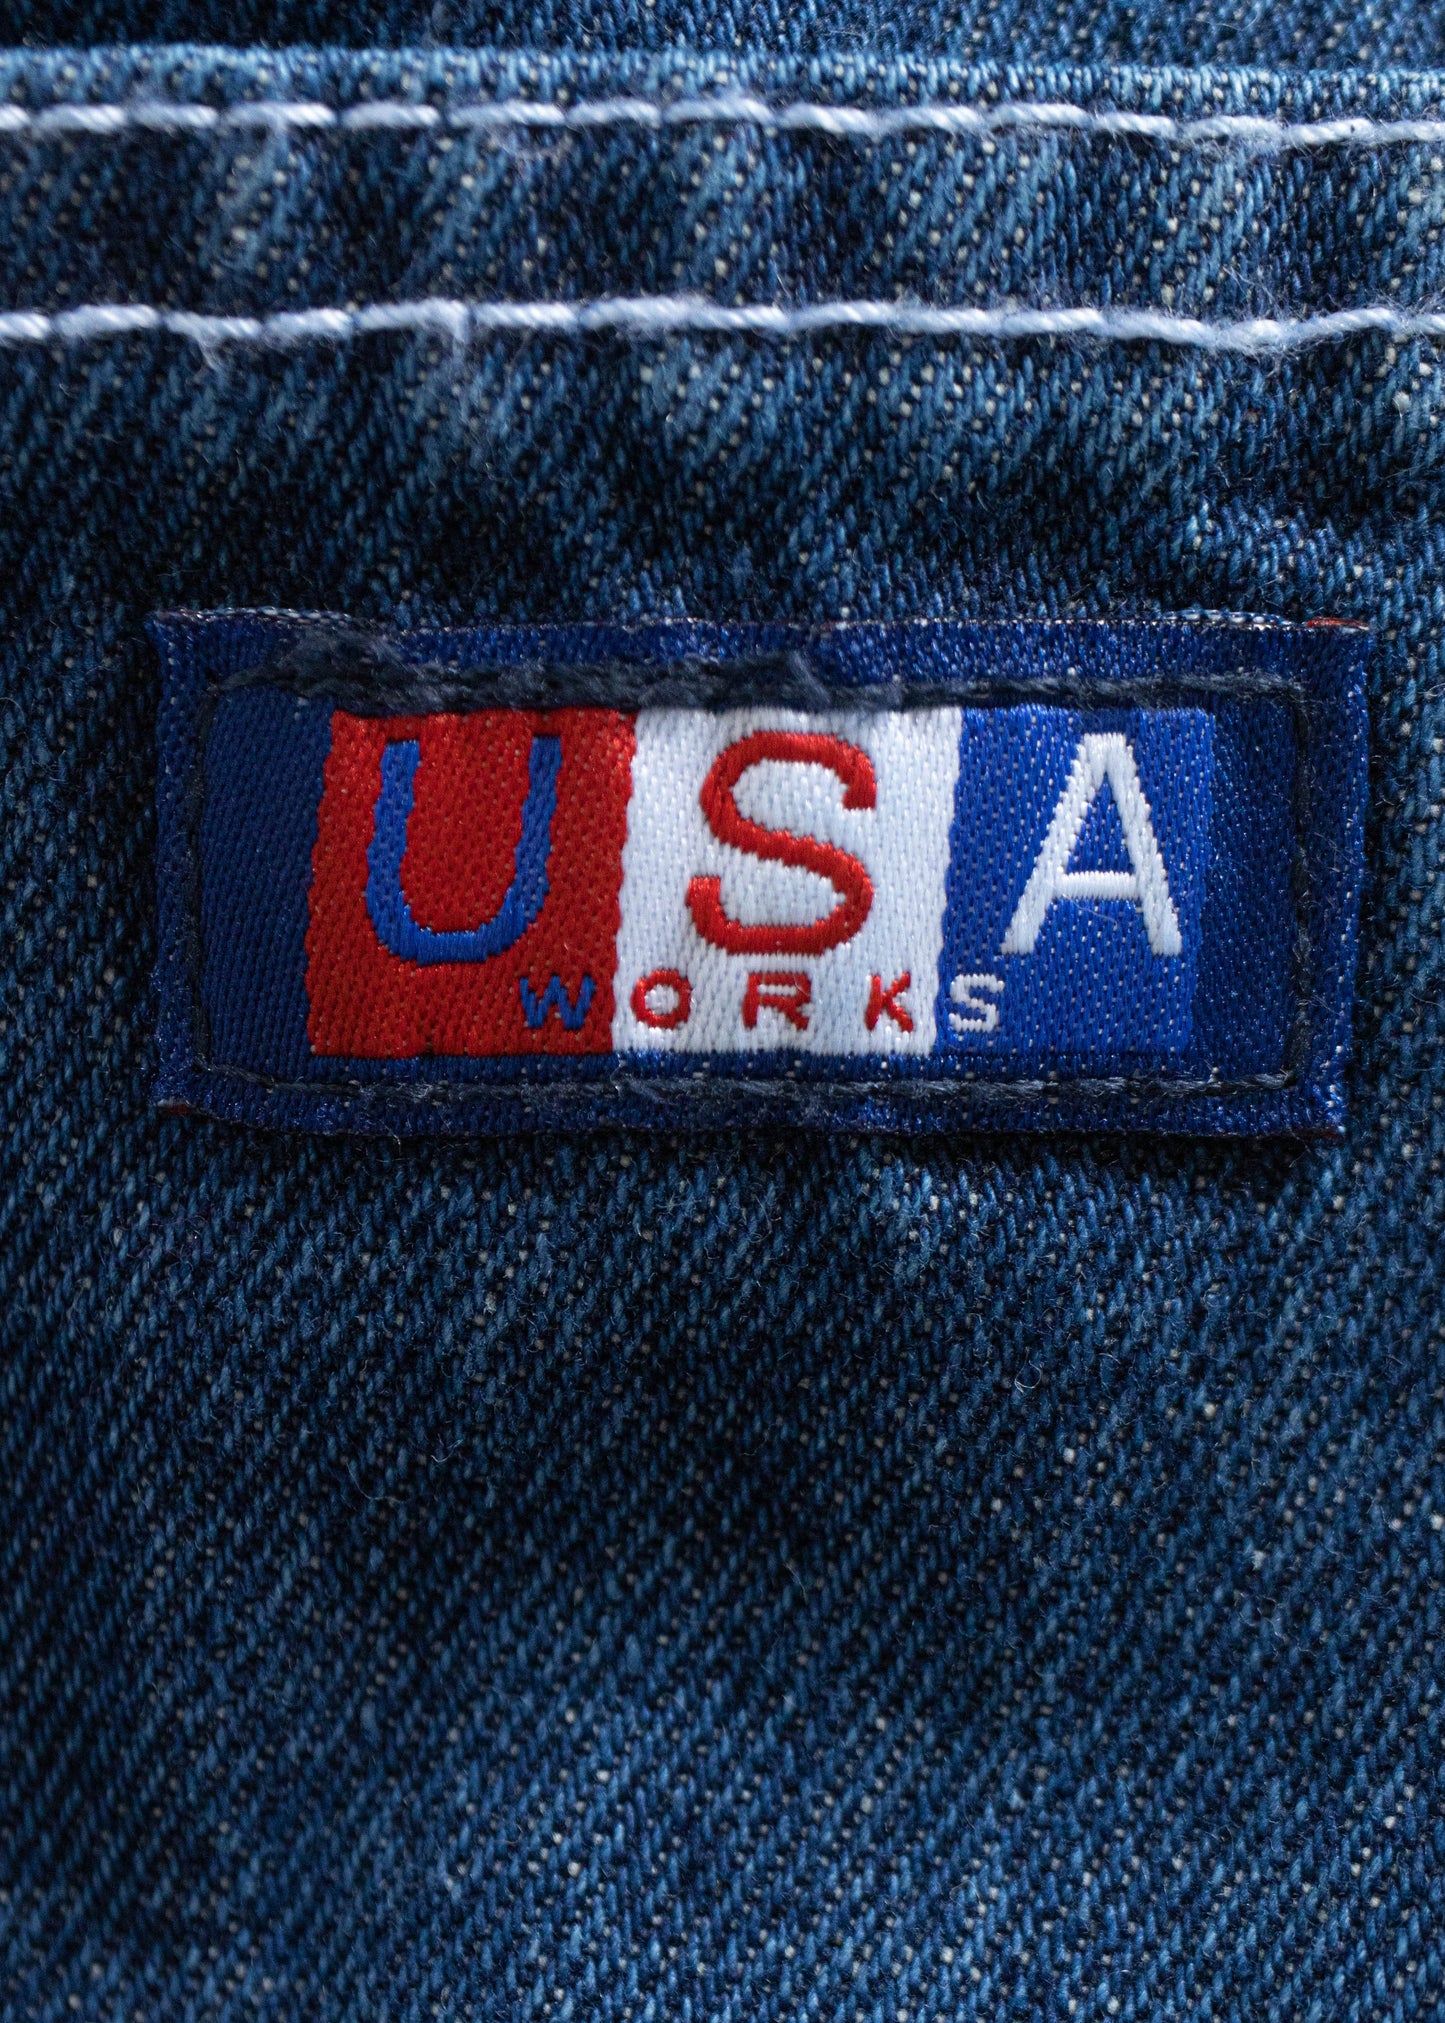 1980s USA Works Deadstock Denim Carpenter Pants Size Women's 42 Men's 44